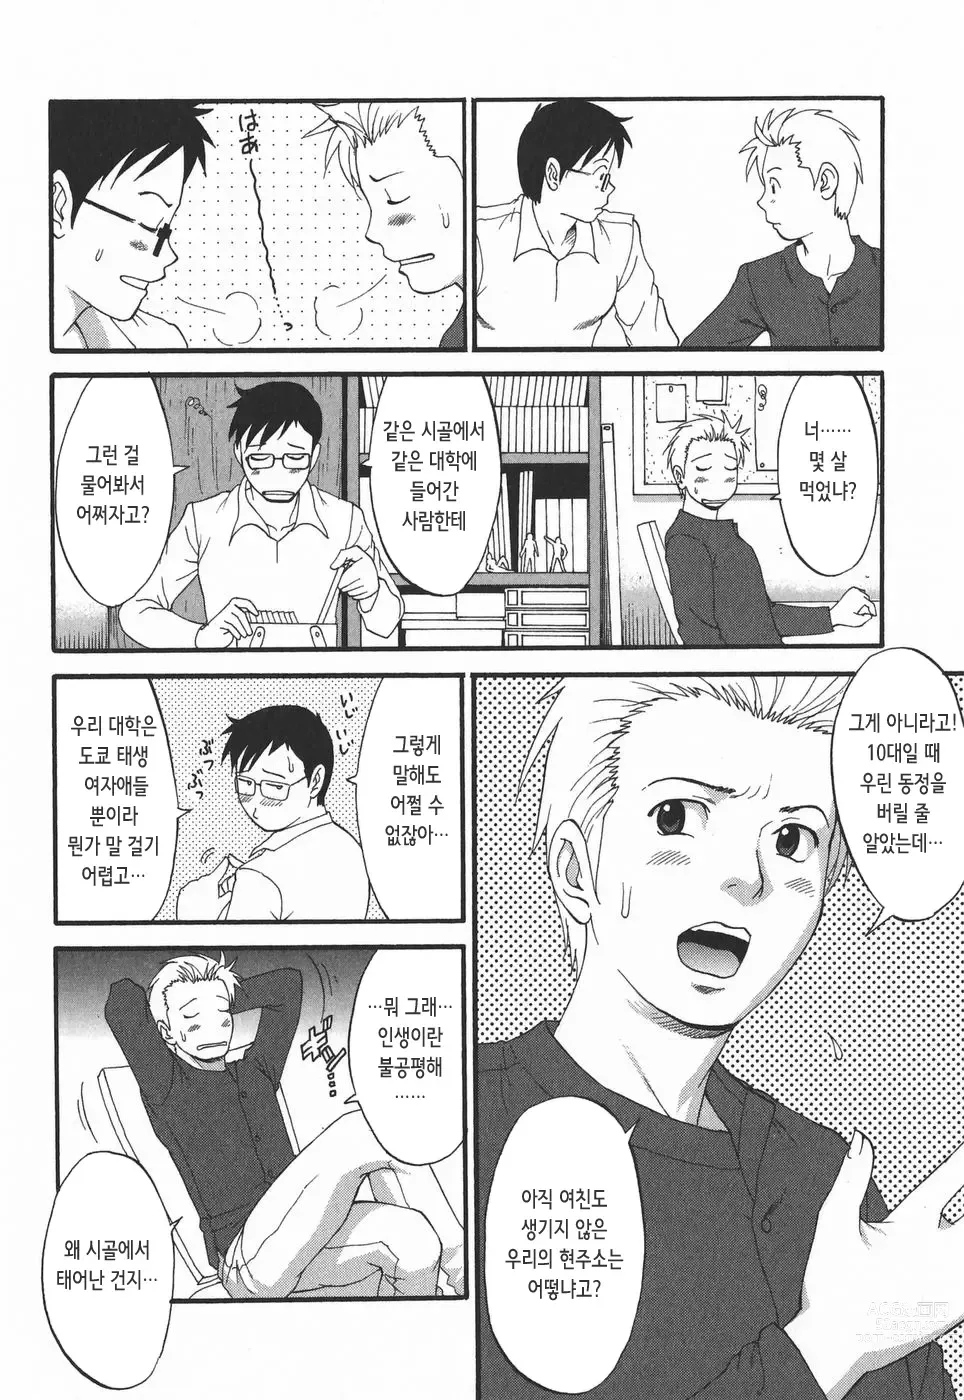 Page 175 of doujinshi 하나 씨의 휴일 2